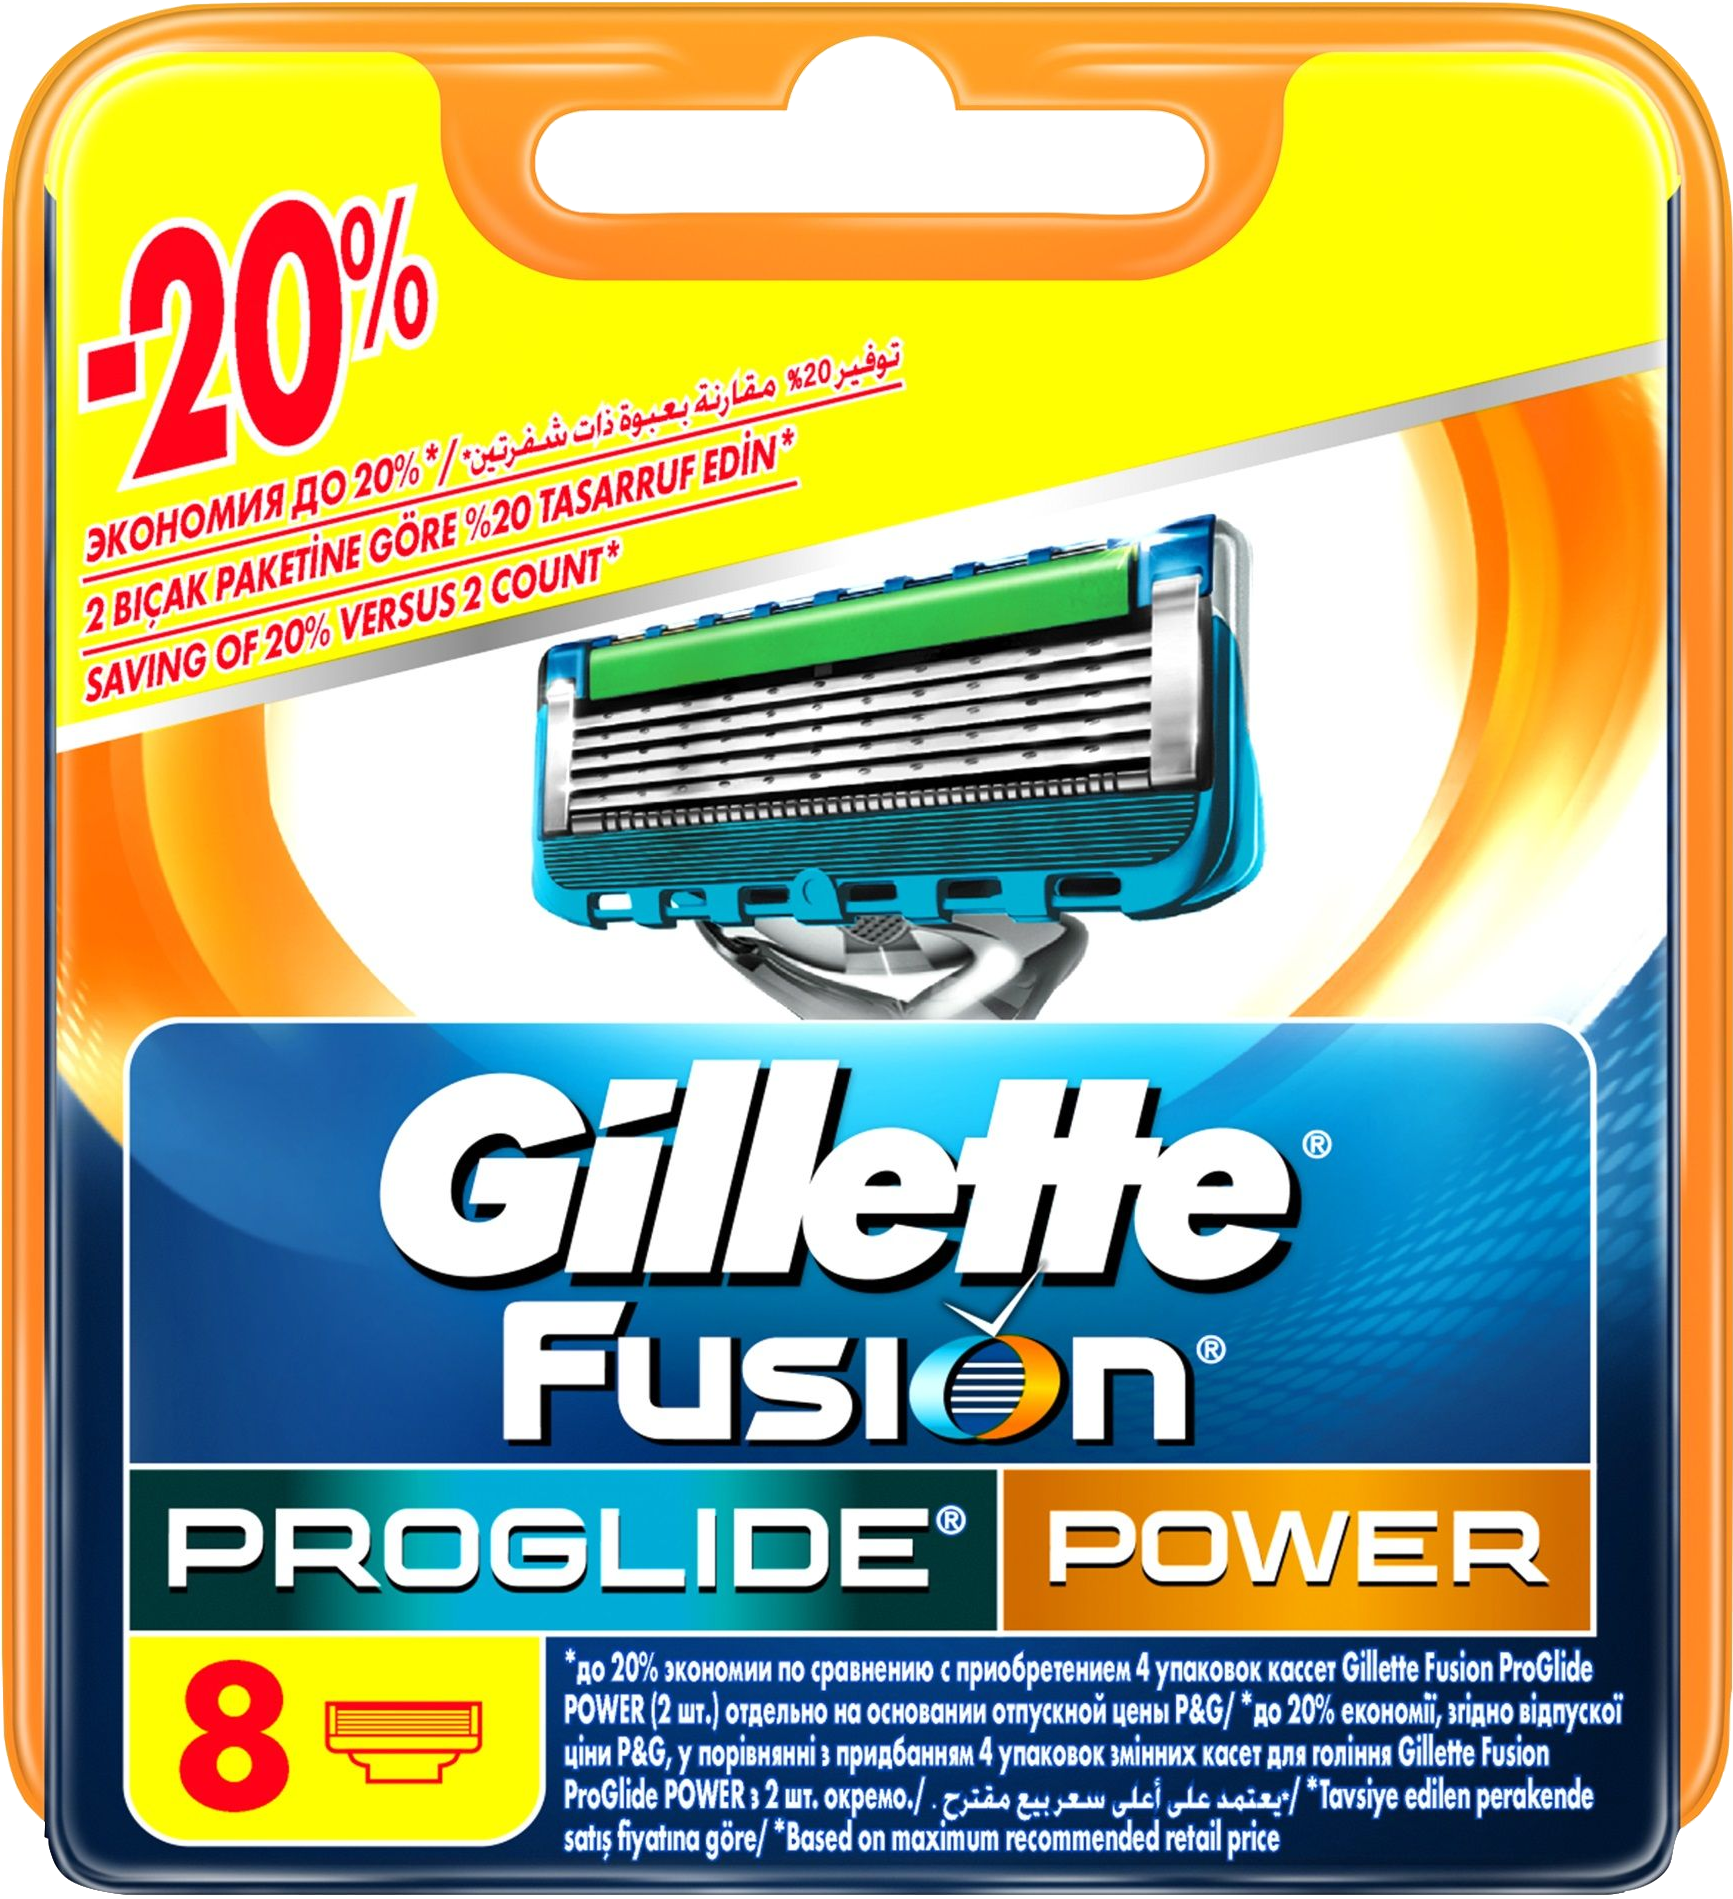 Джилет пауэр. Кассеты "Fusion PROGLIDE Power" "4". Fusion 5 PROGLIDE Power кассеты 8 шт.